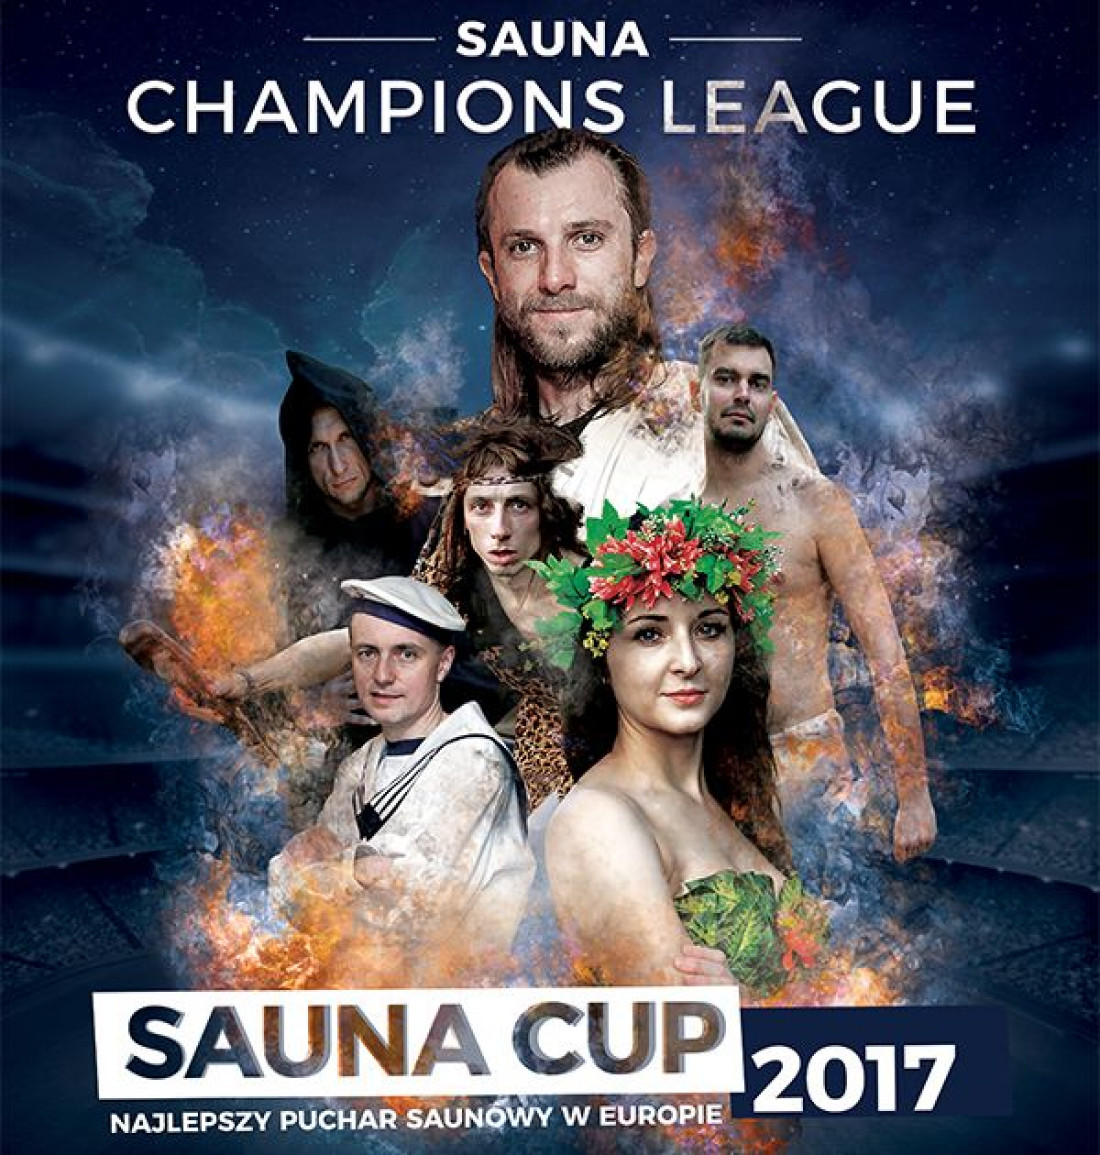 Klafs zaprasza na Sauna Cup 2017 w "Tarnowskich Termach"